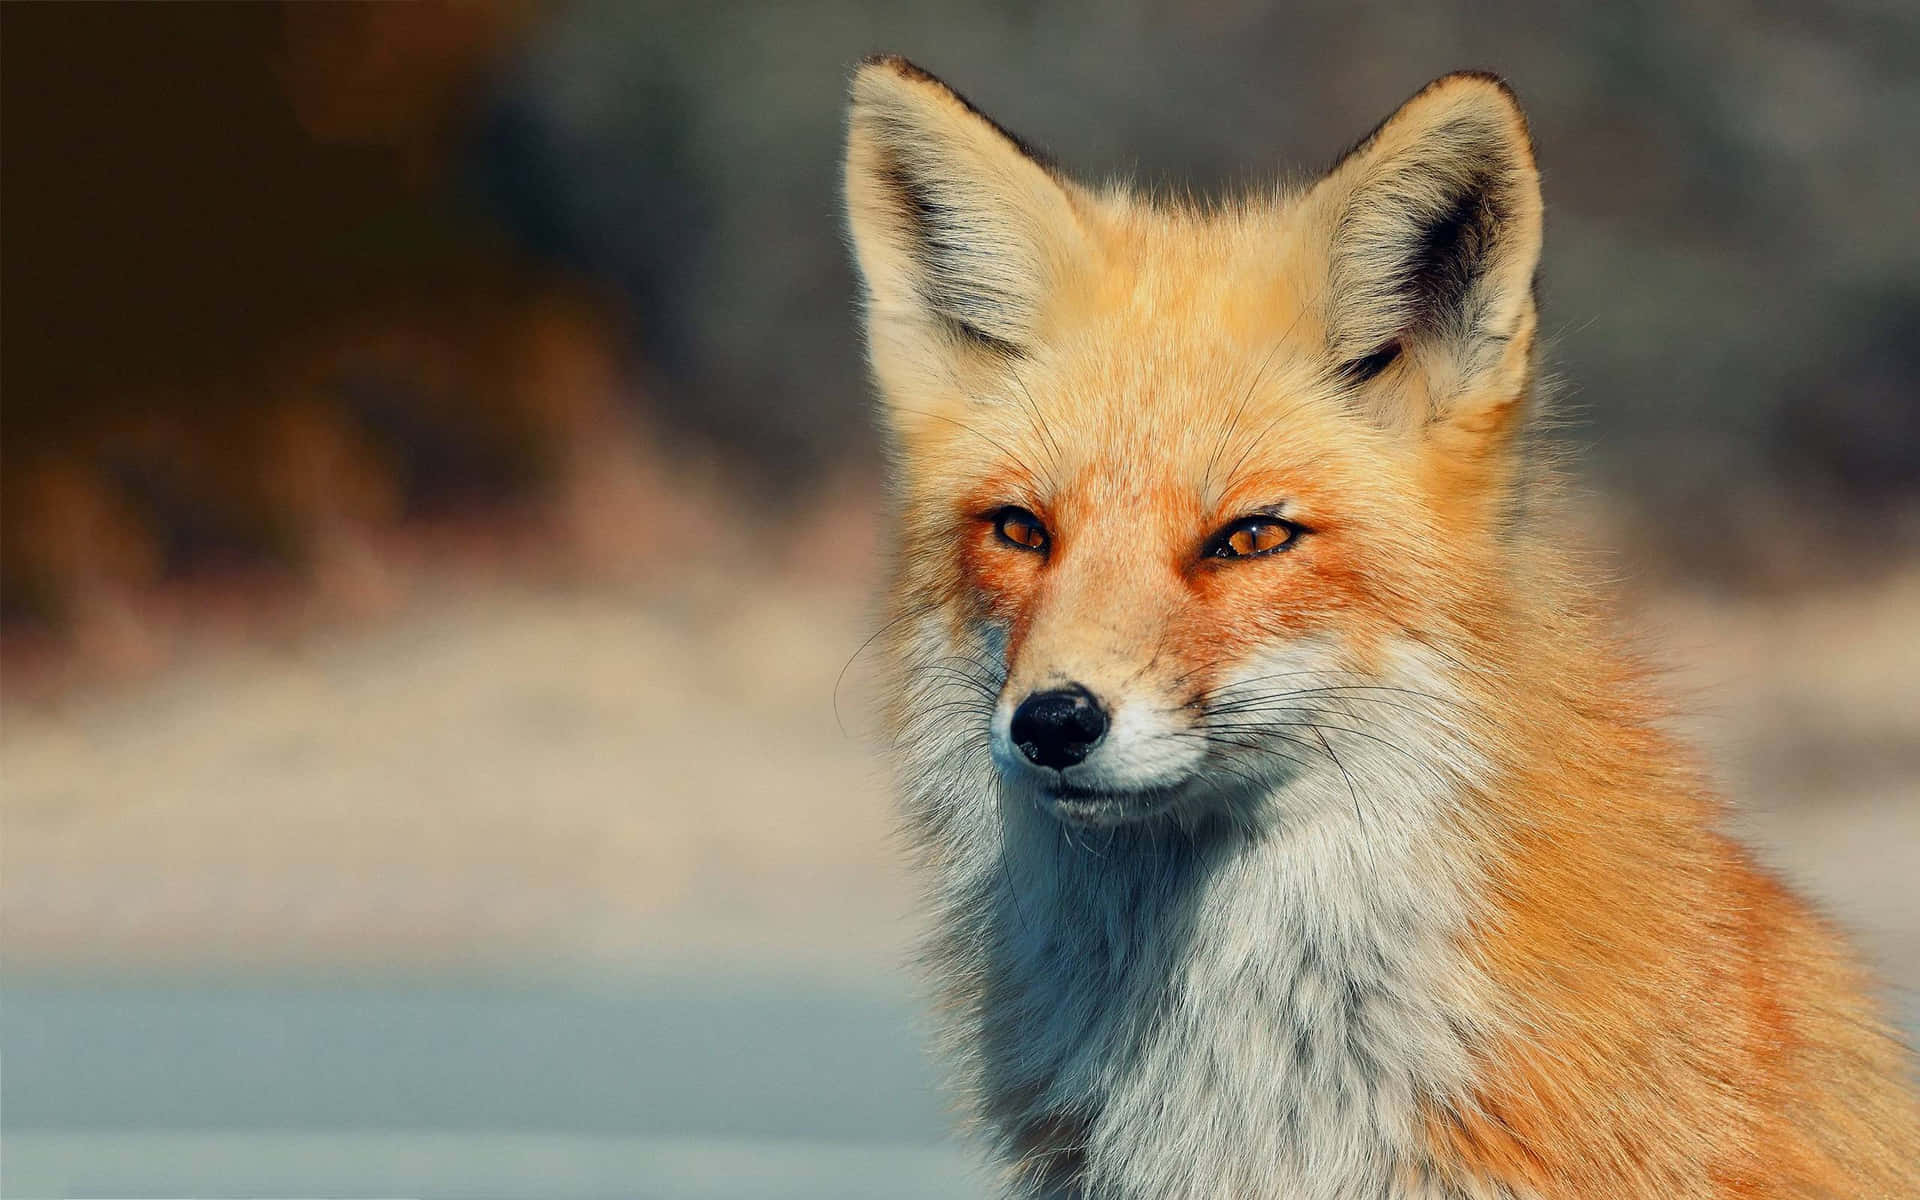 A fluffy red fox enjoying a warm winter day